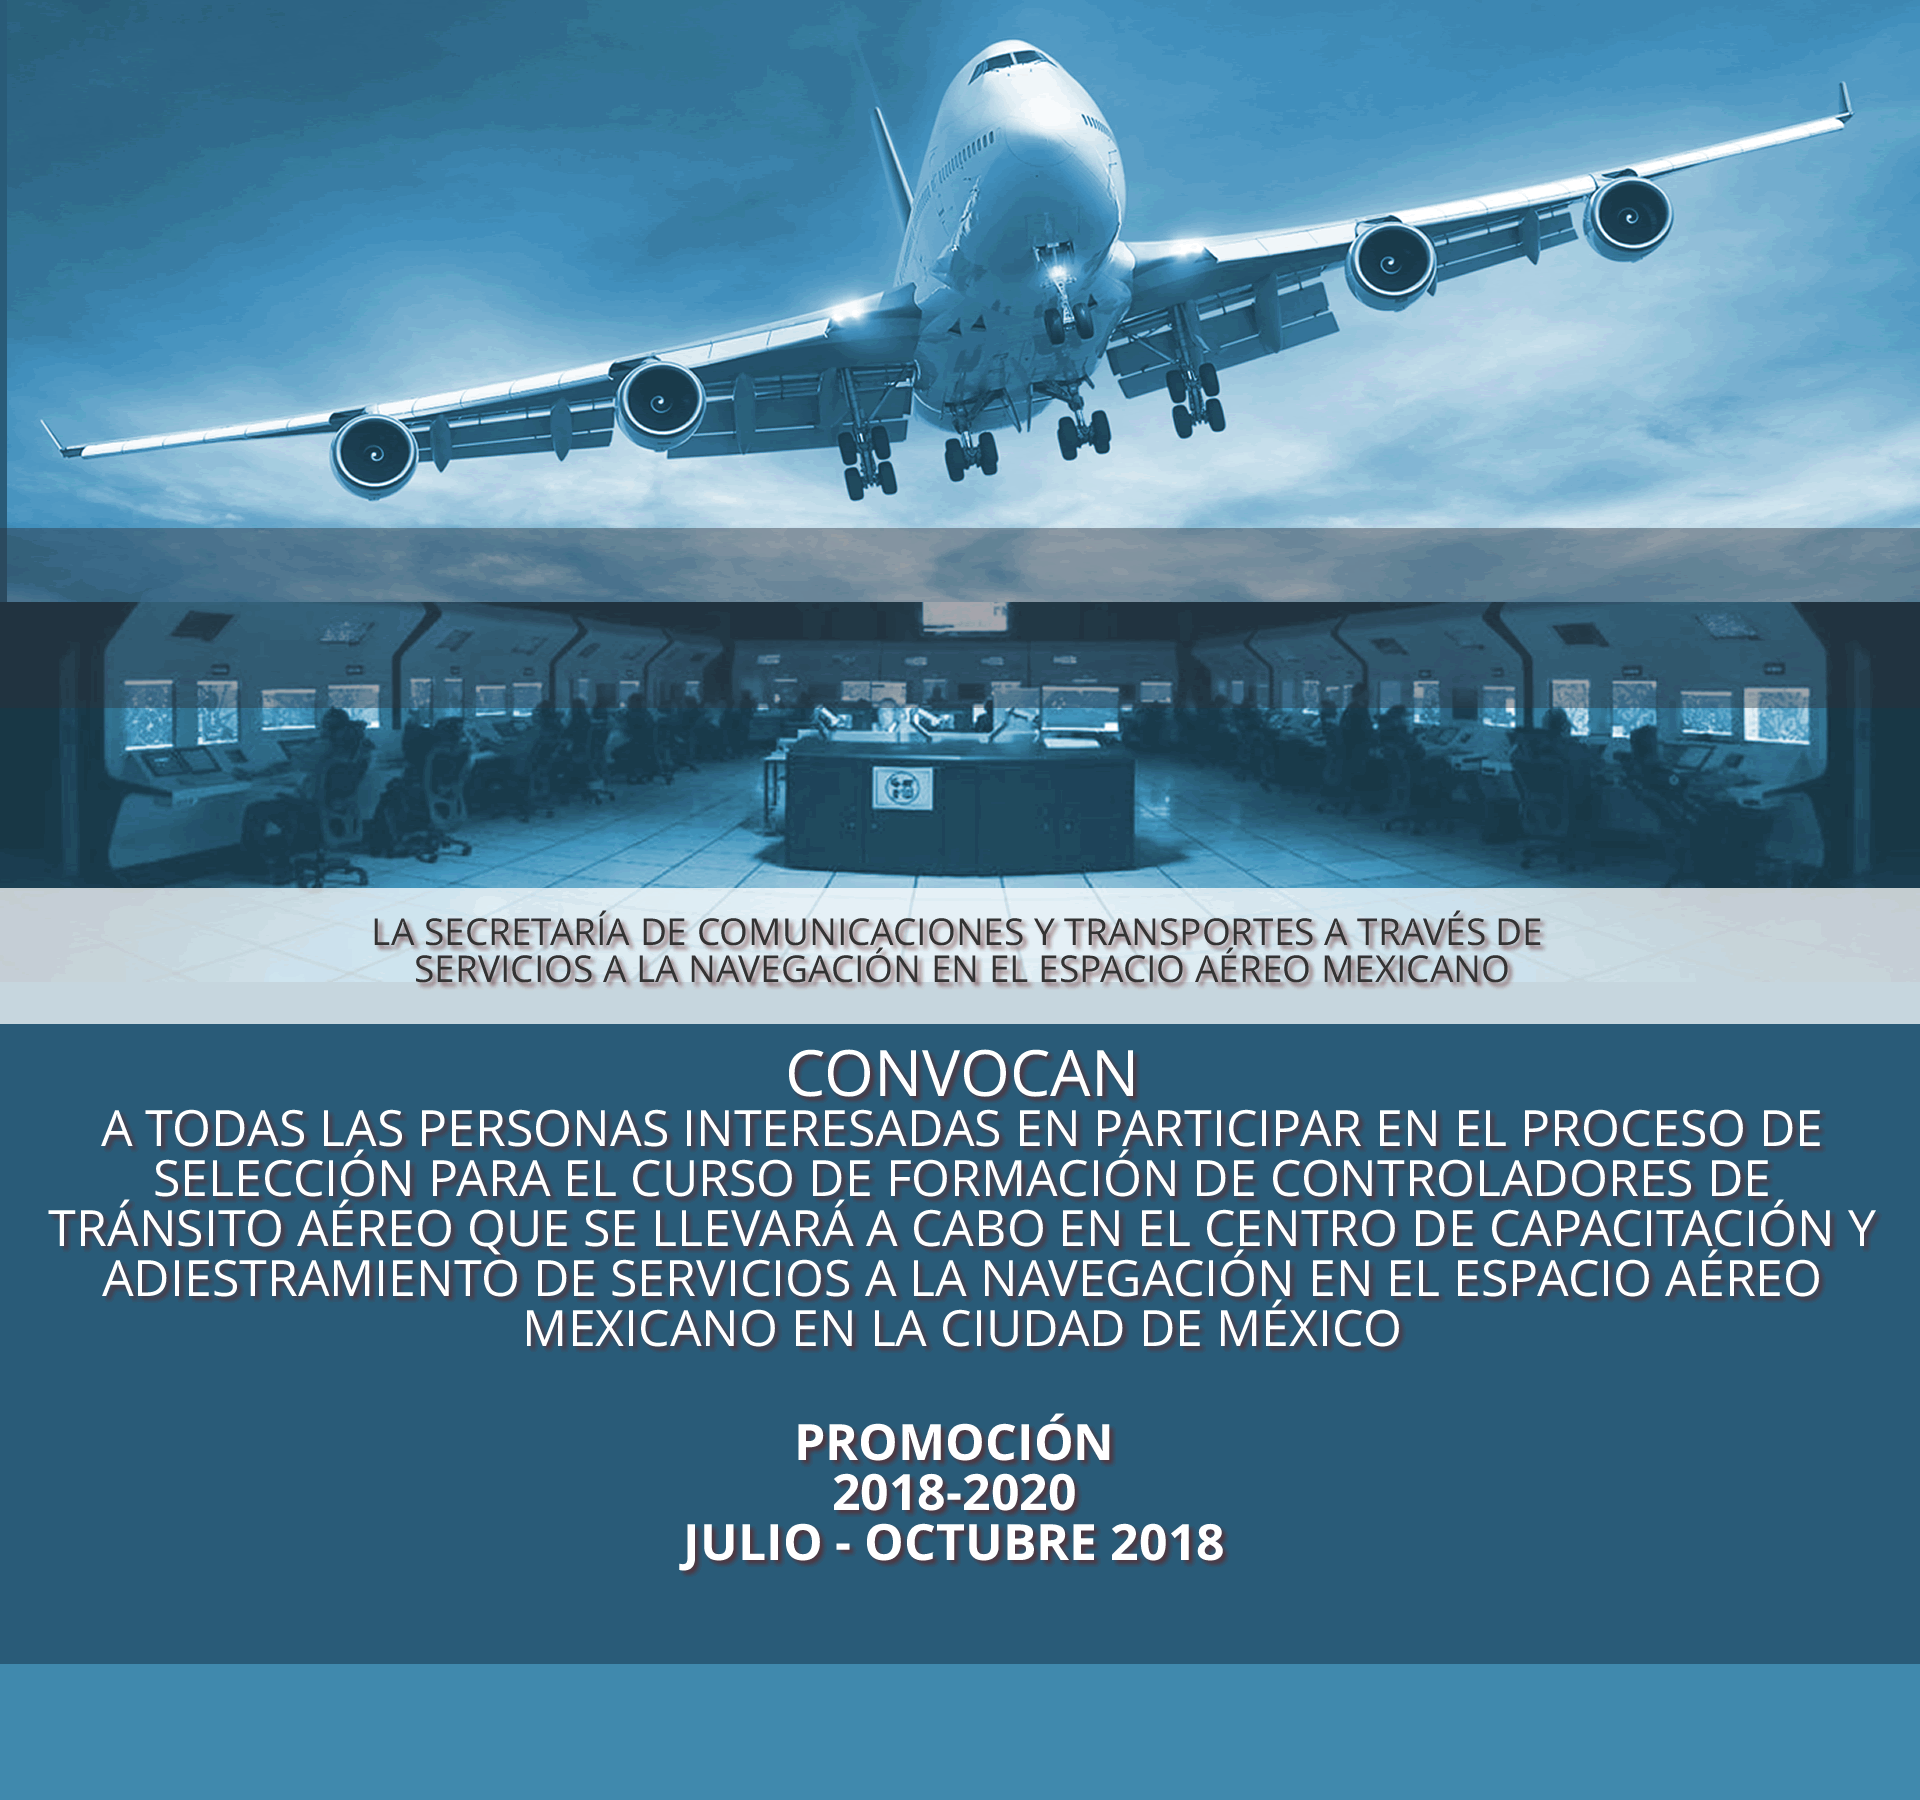 Curso de Formación de Controlador de Tránsito Aéreo
Promoción 2018 - 2020